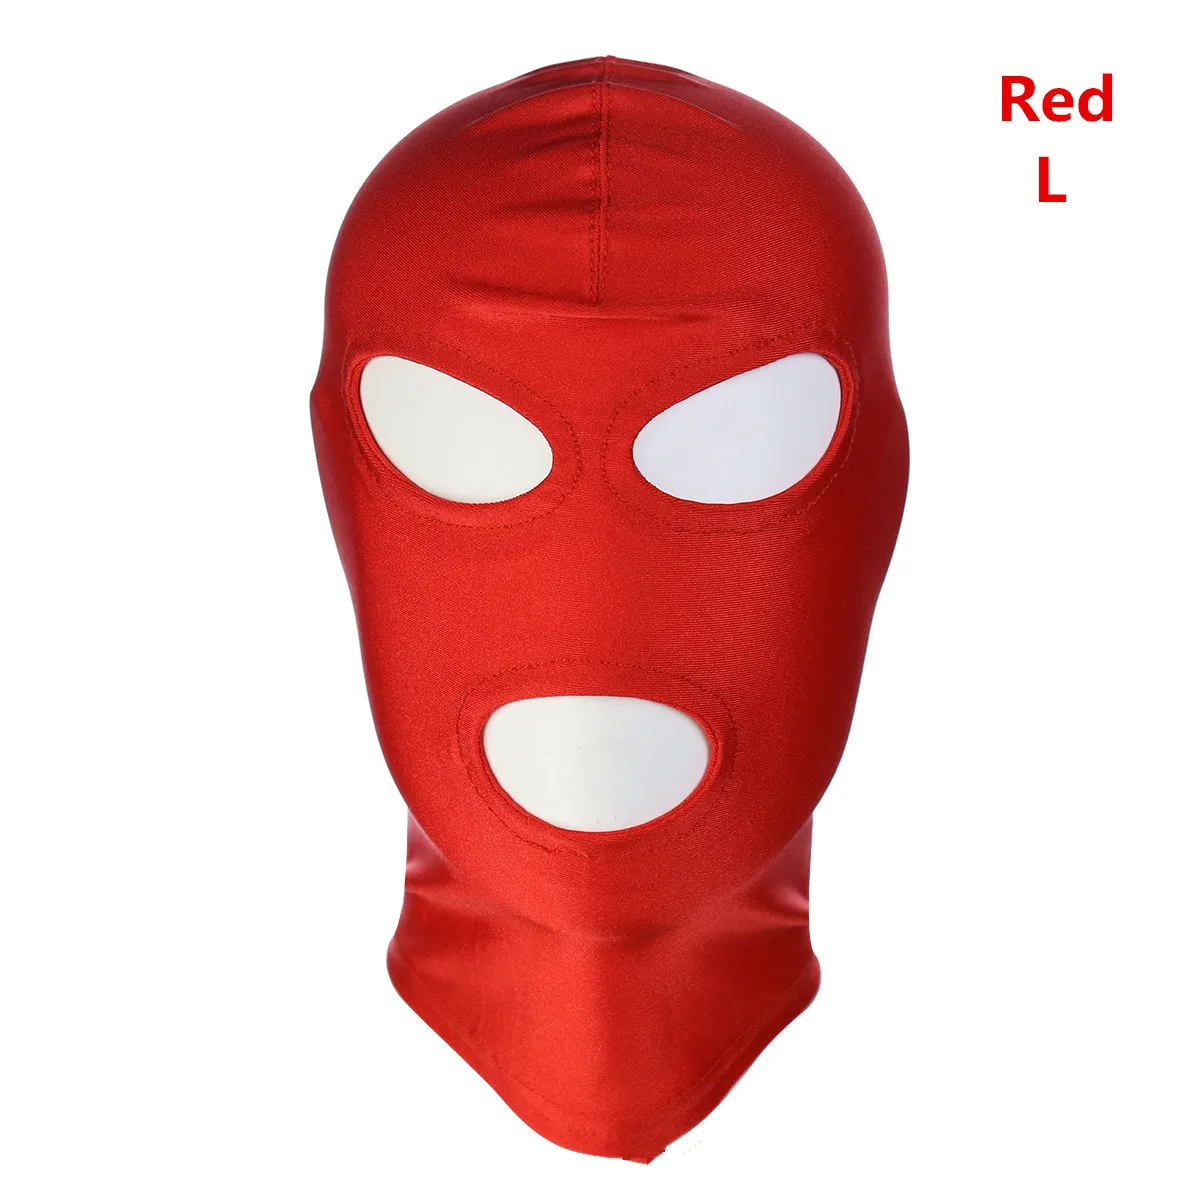 30 стилей, высокое качество, сексуальная, унисекс, дышащая маска с капюшоном для БДСМ, связывание, ролевые игры, косплей, костюм для вечеринки на Хэллоуин, ночное белье - Цвет: Red A L